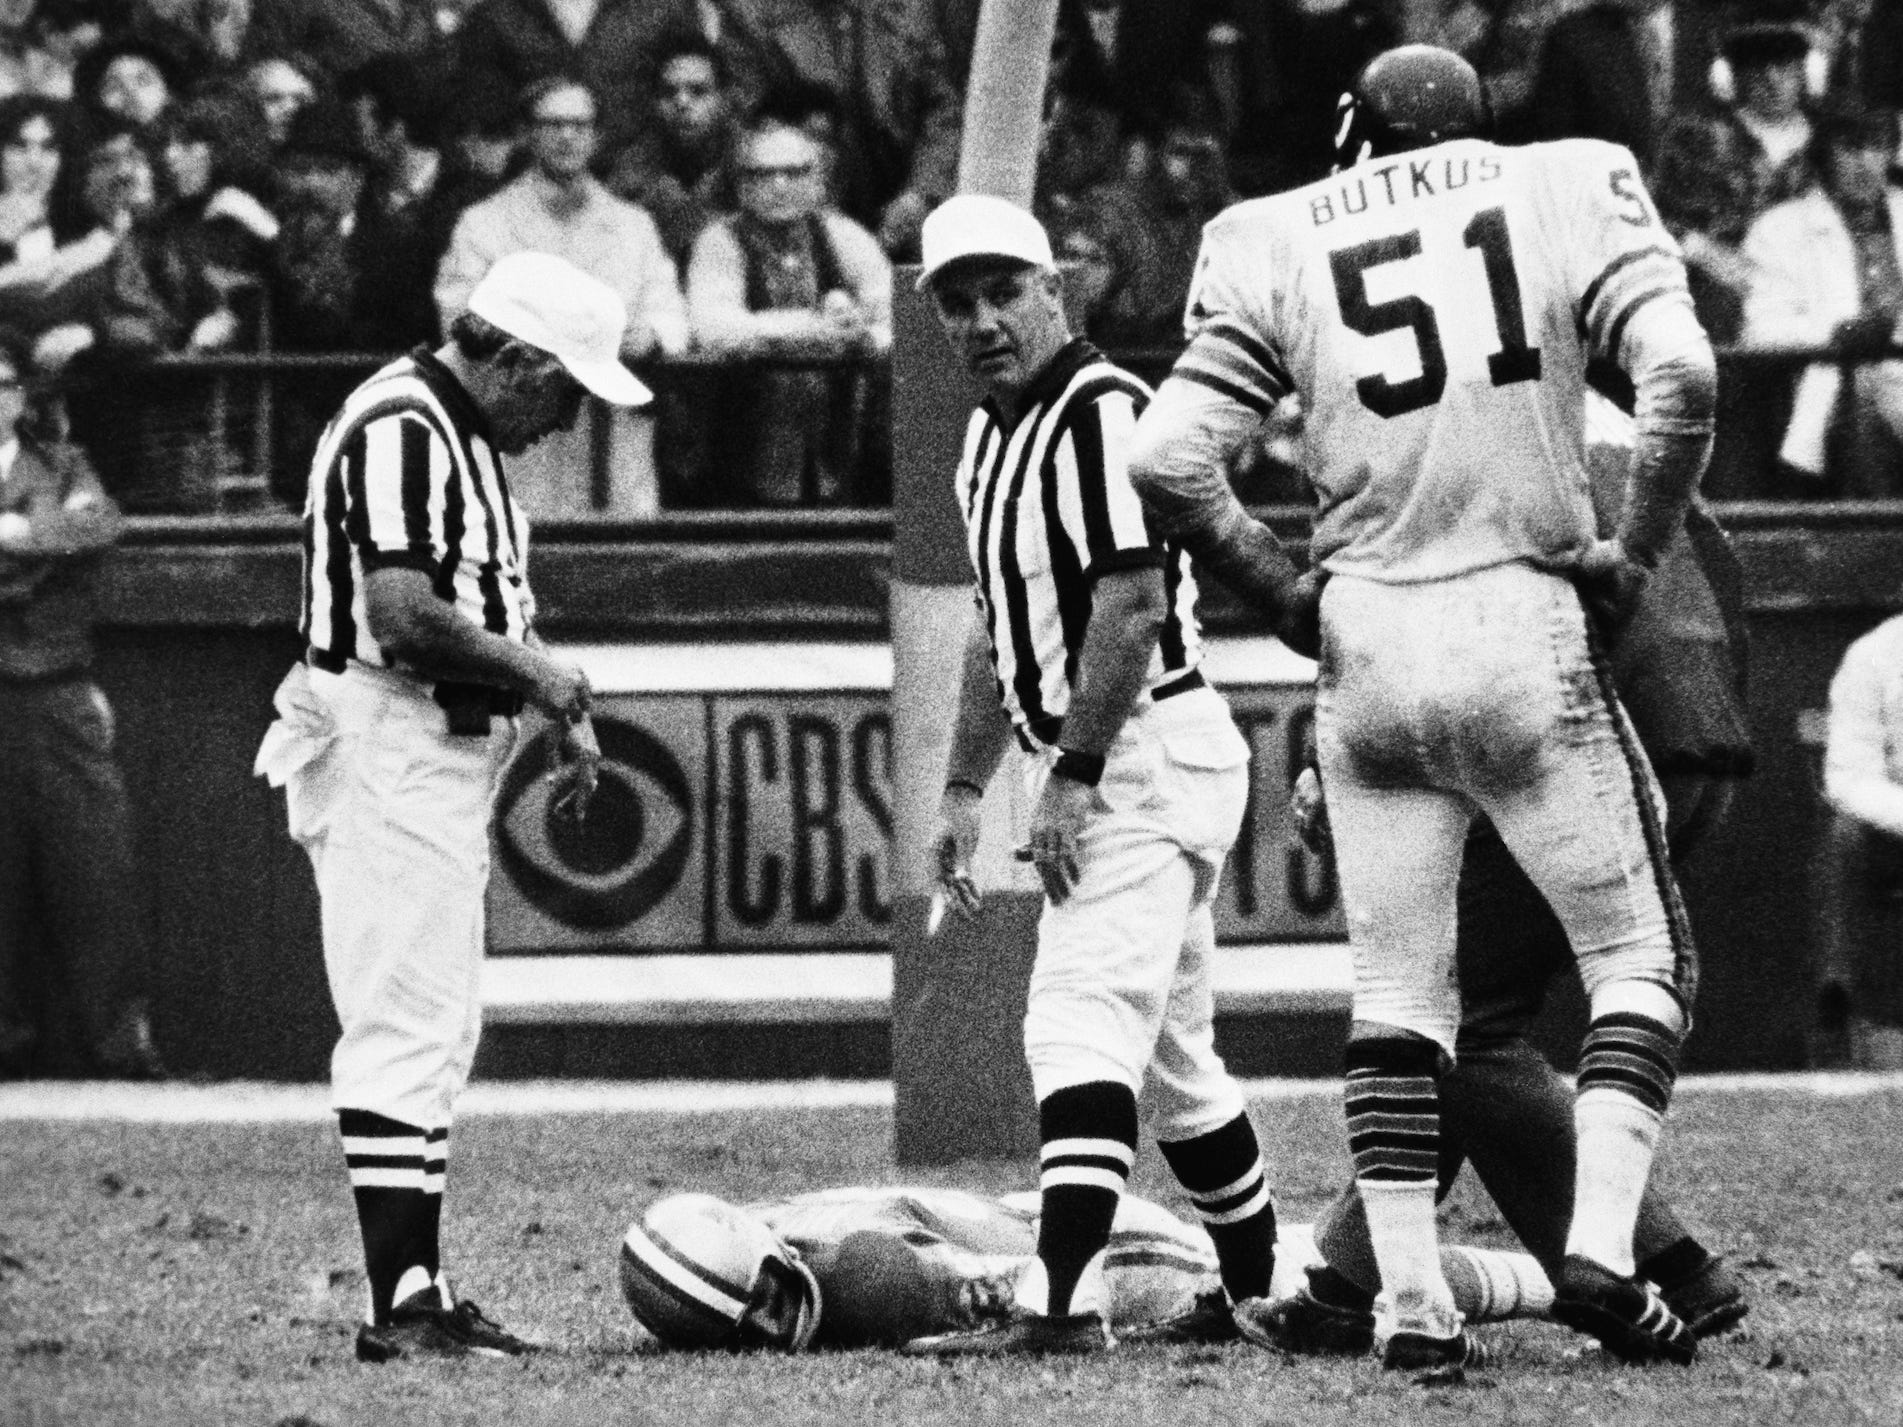 Chuck Hughes liegt mit dem Gesicht nach unten auf dem Feld, während zwei Schiedsrichter auf einem Schwarz-Weiß-Bild zuschauen.